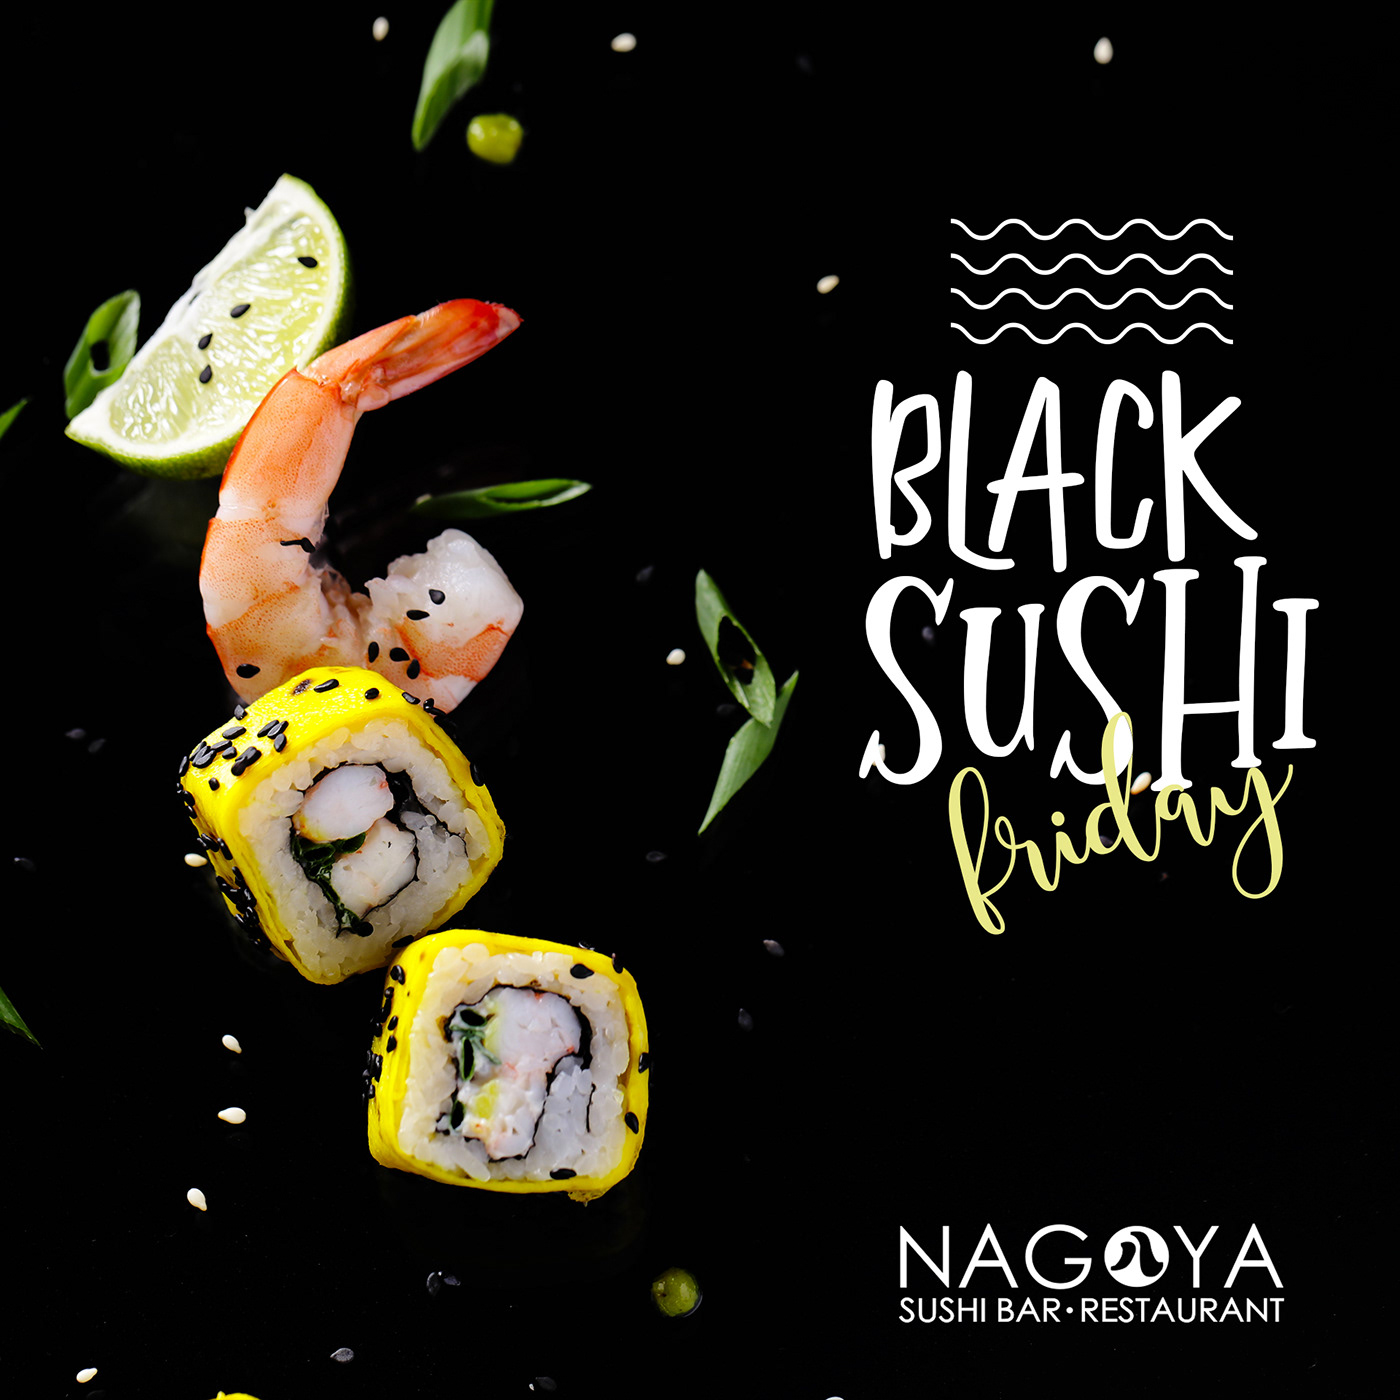 Sushi Promozione pubblicita Black Friday promo ristorante